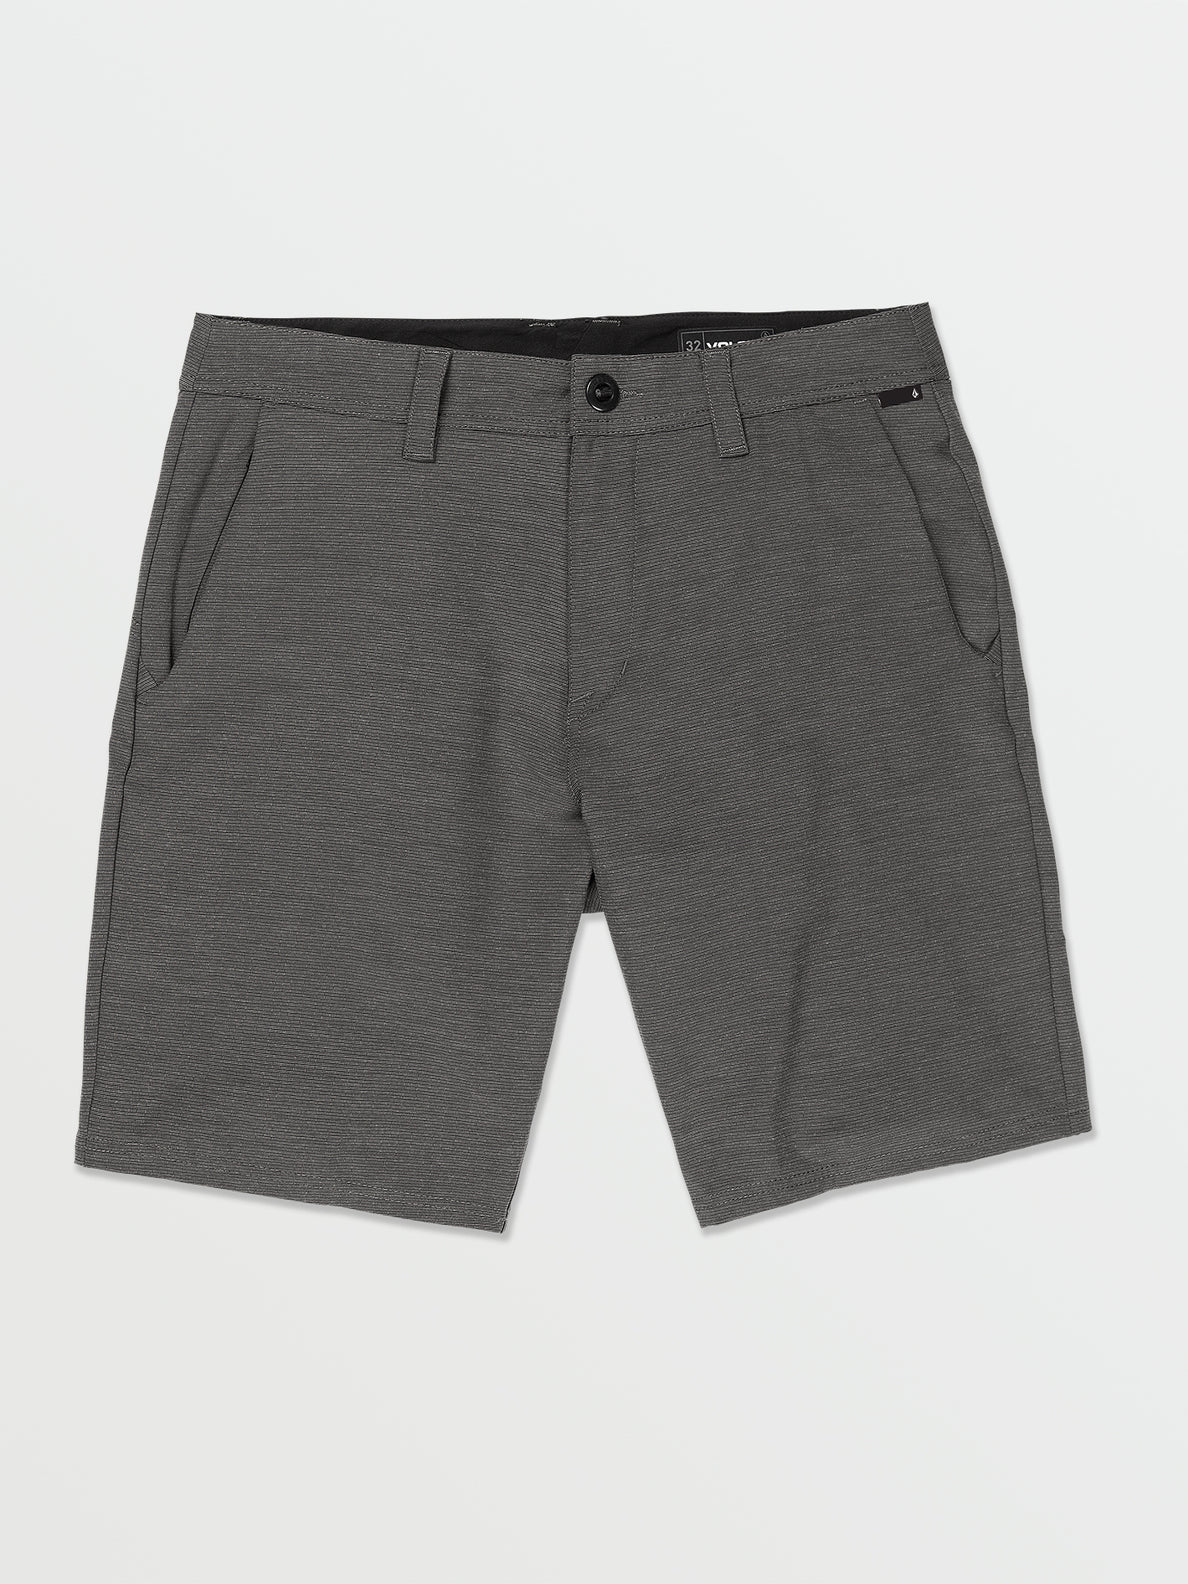 Slub Frickin Cross Shred Shorts - Black (A3212302_BLK) [F]